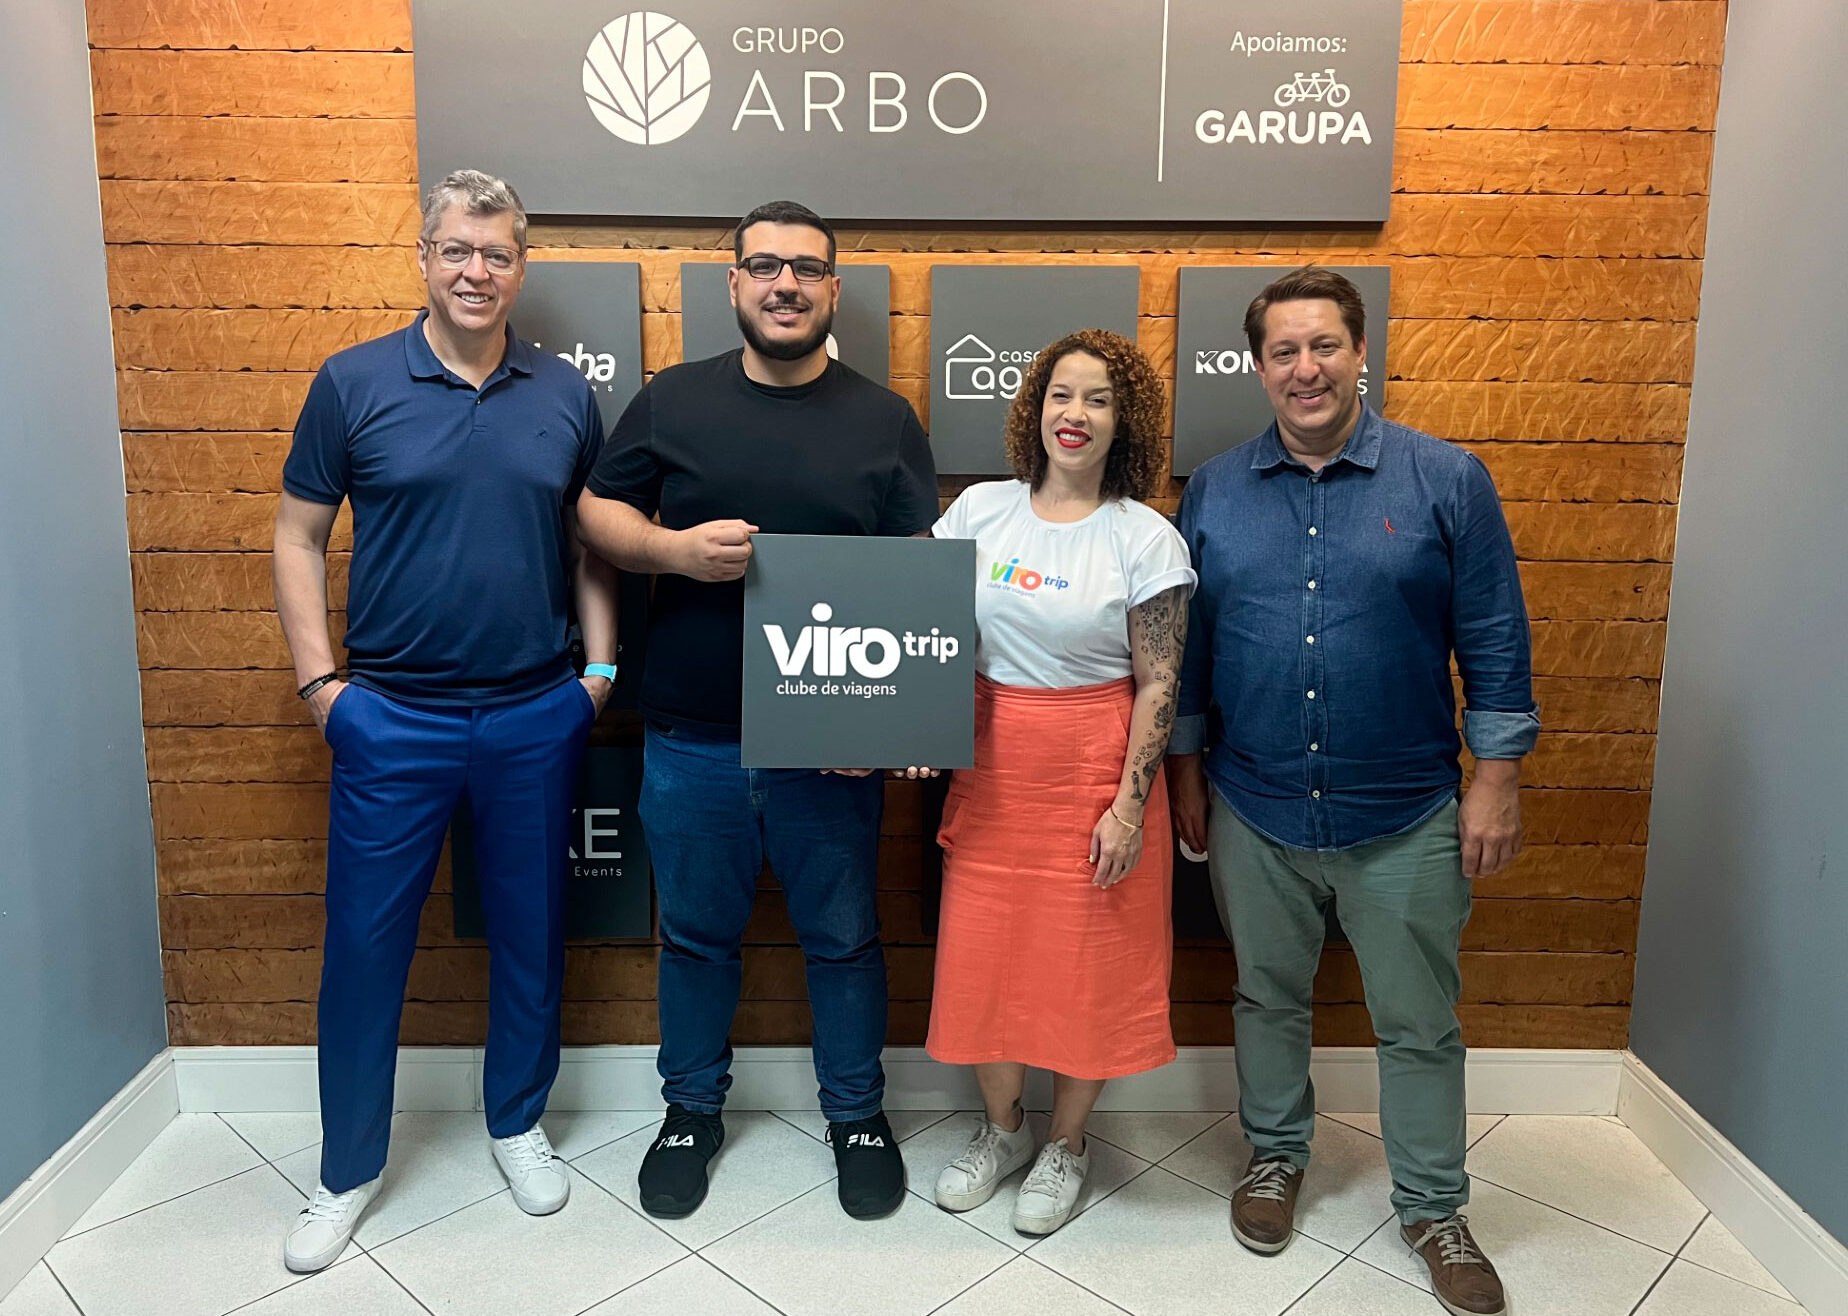 foto virotrip equipe 09 e1706812255589 ViroTrip: Grupo Arbo lança oficialmente seu clube de viagens